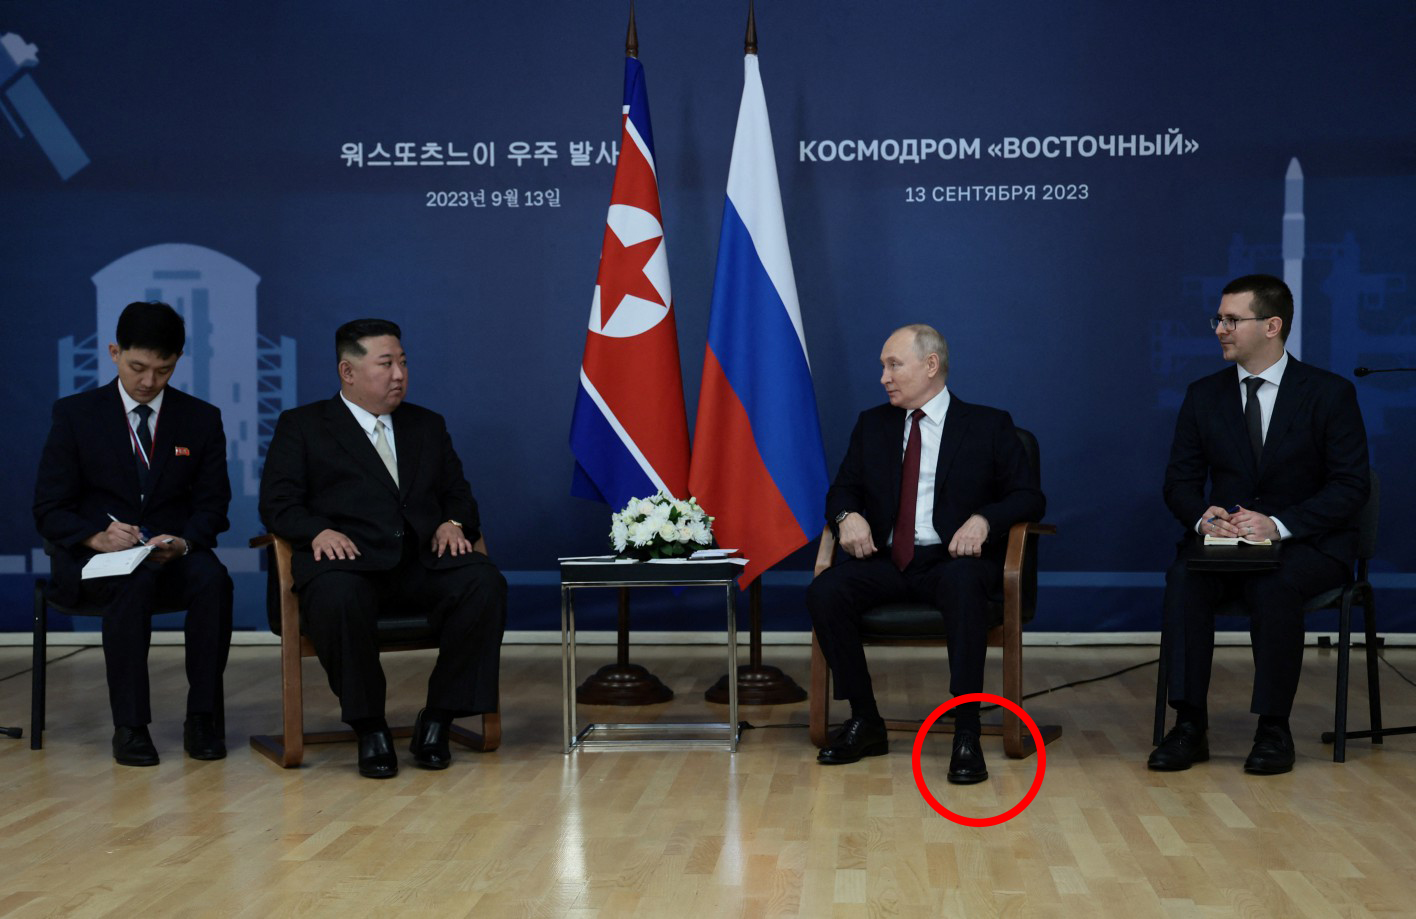 Das Filmmaterial zeigt, wie Putins linker Fuß ständig auf und ab hüpft, während er mit dem nordkoreanischen Führer spricht